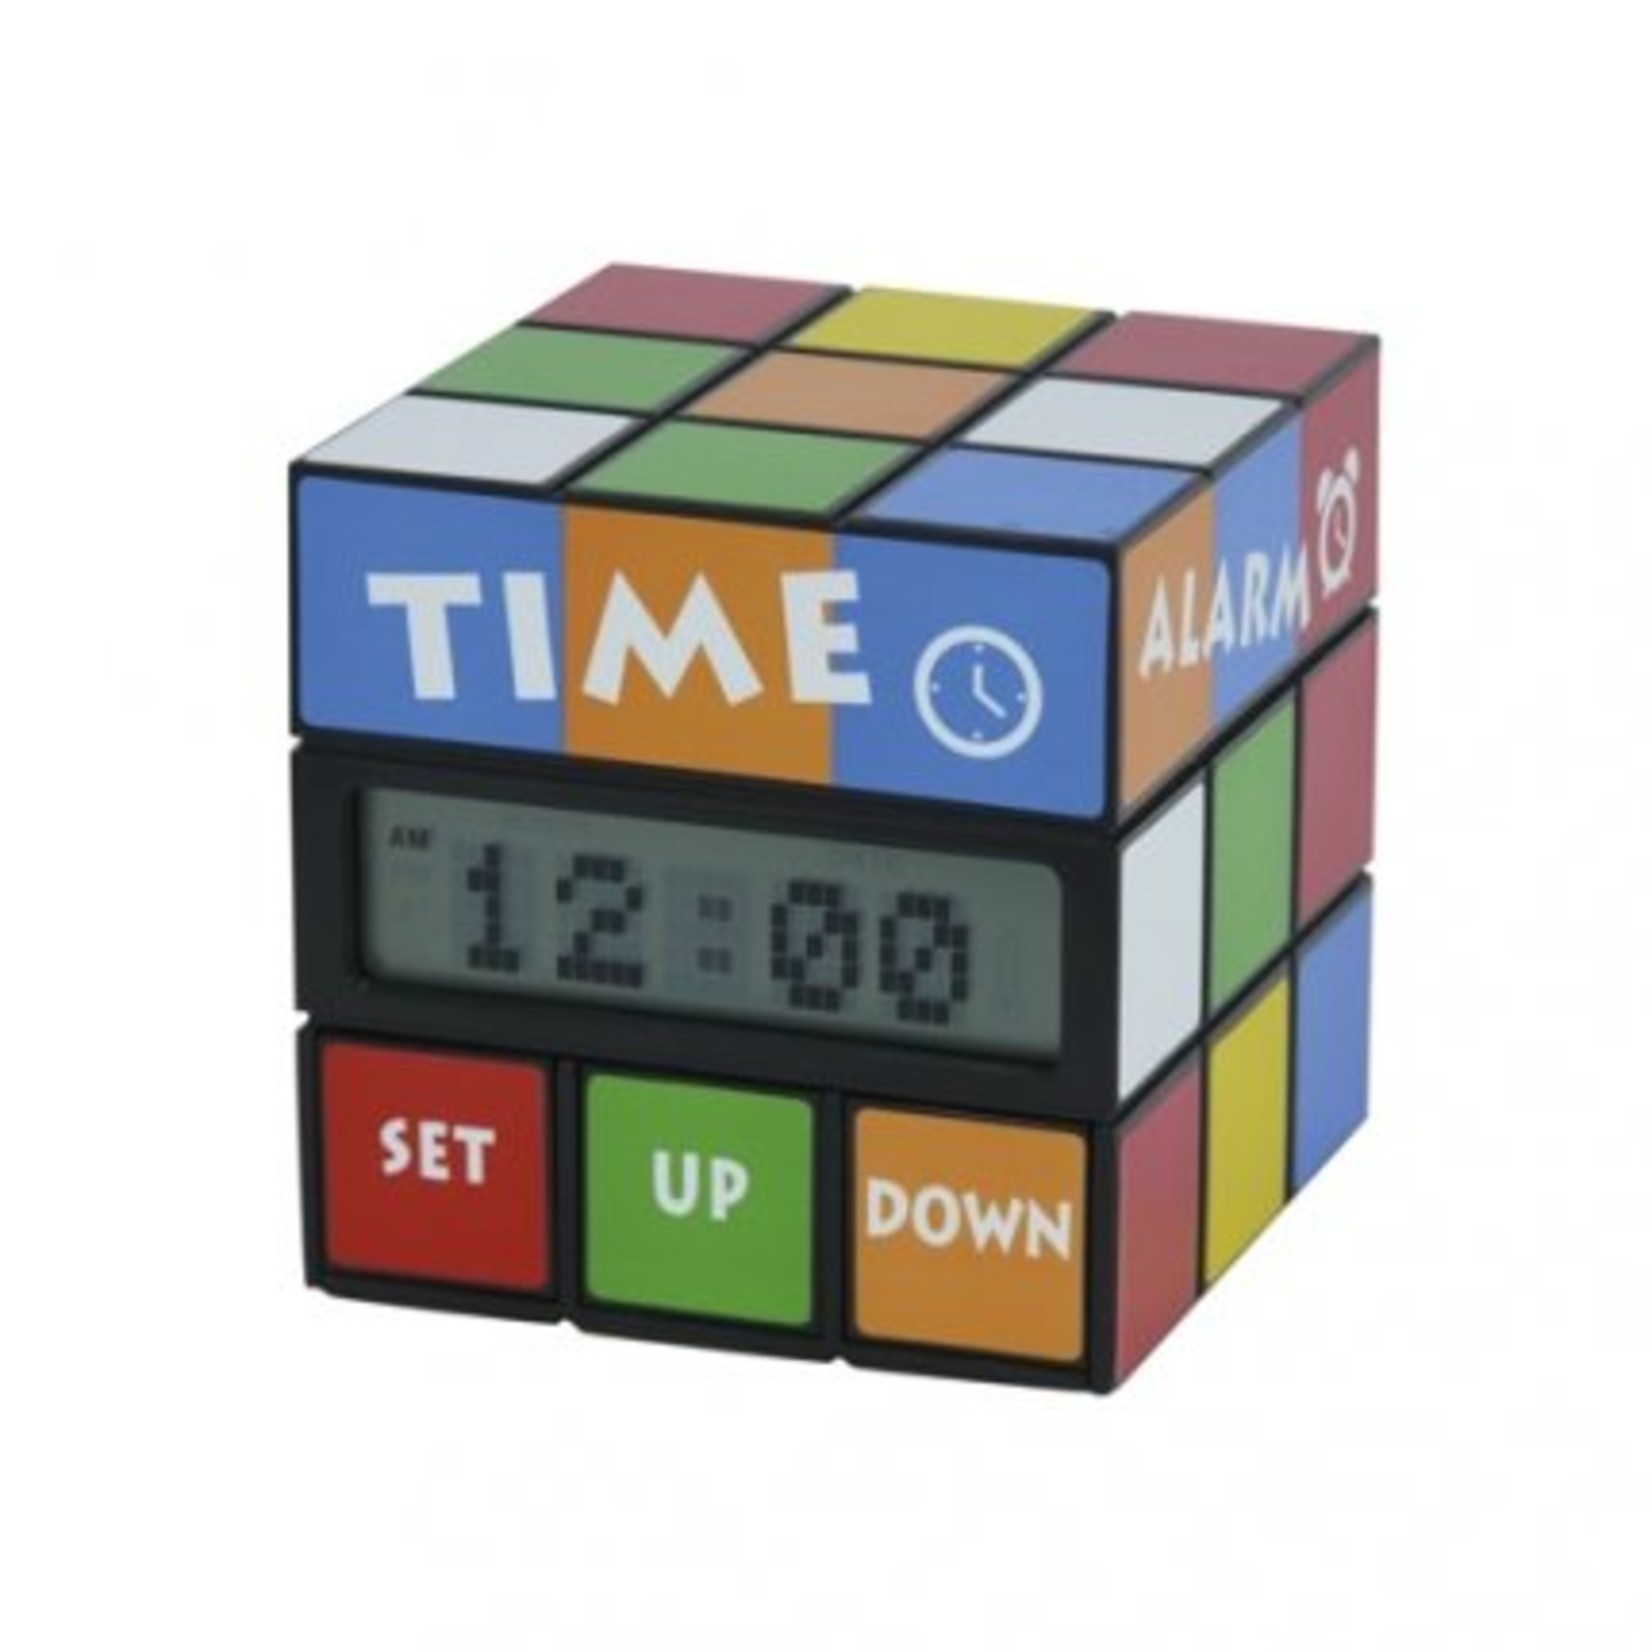 Iedereen kent de Rubiks Kubus en nu is er een leuke variant als alarmklok. Door de bovenste schijf te draaien verschijnt er op de display de tijd, datum of temperatuur.